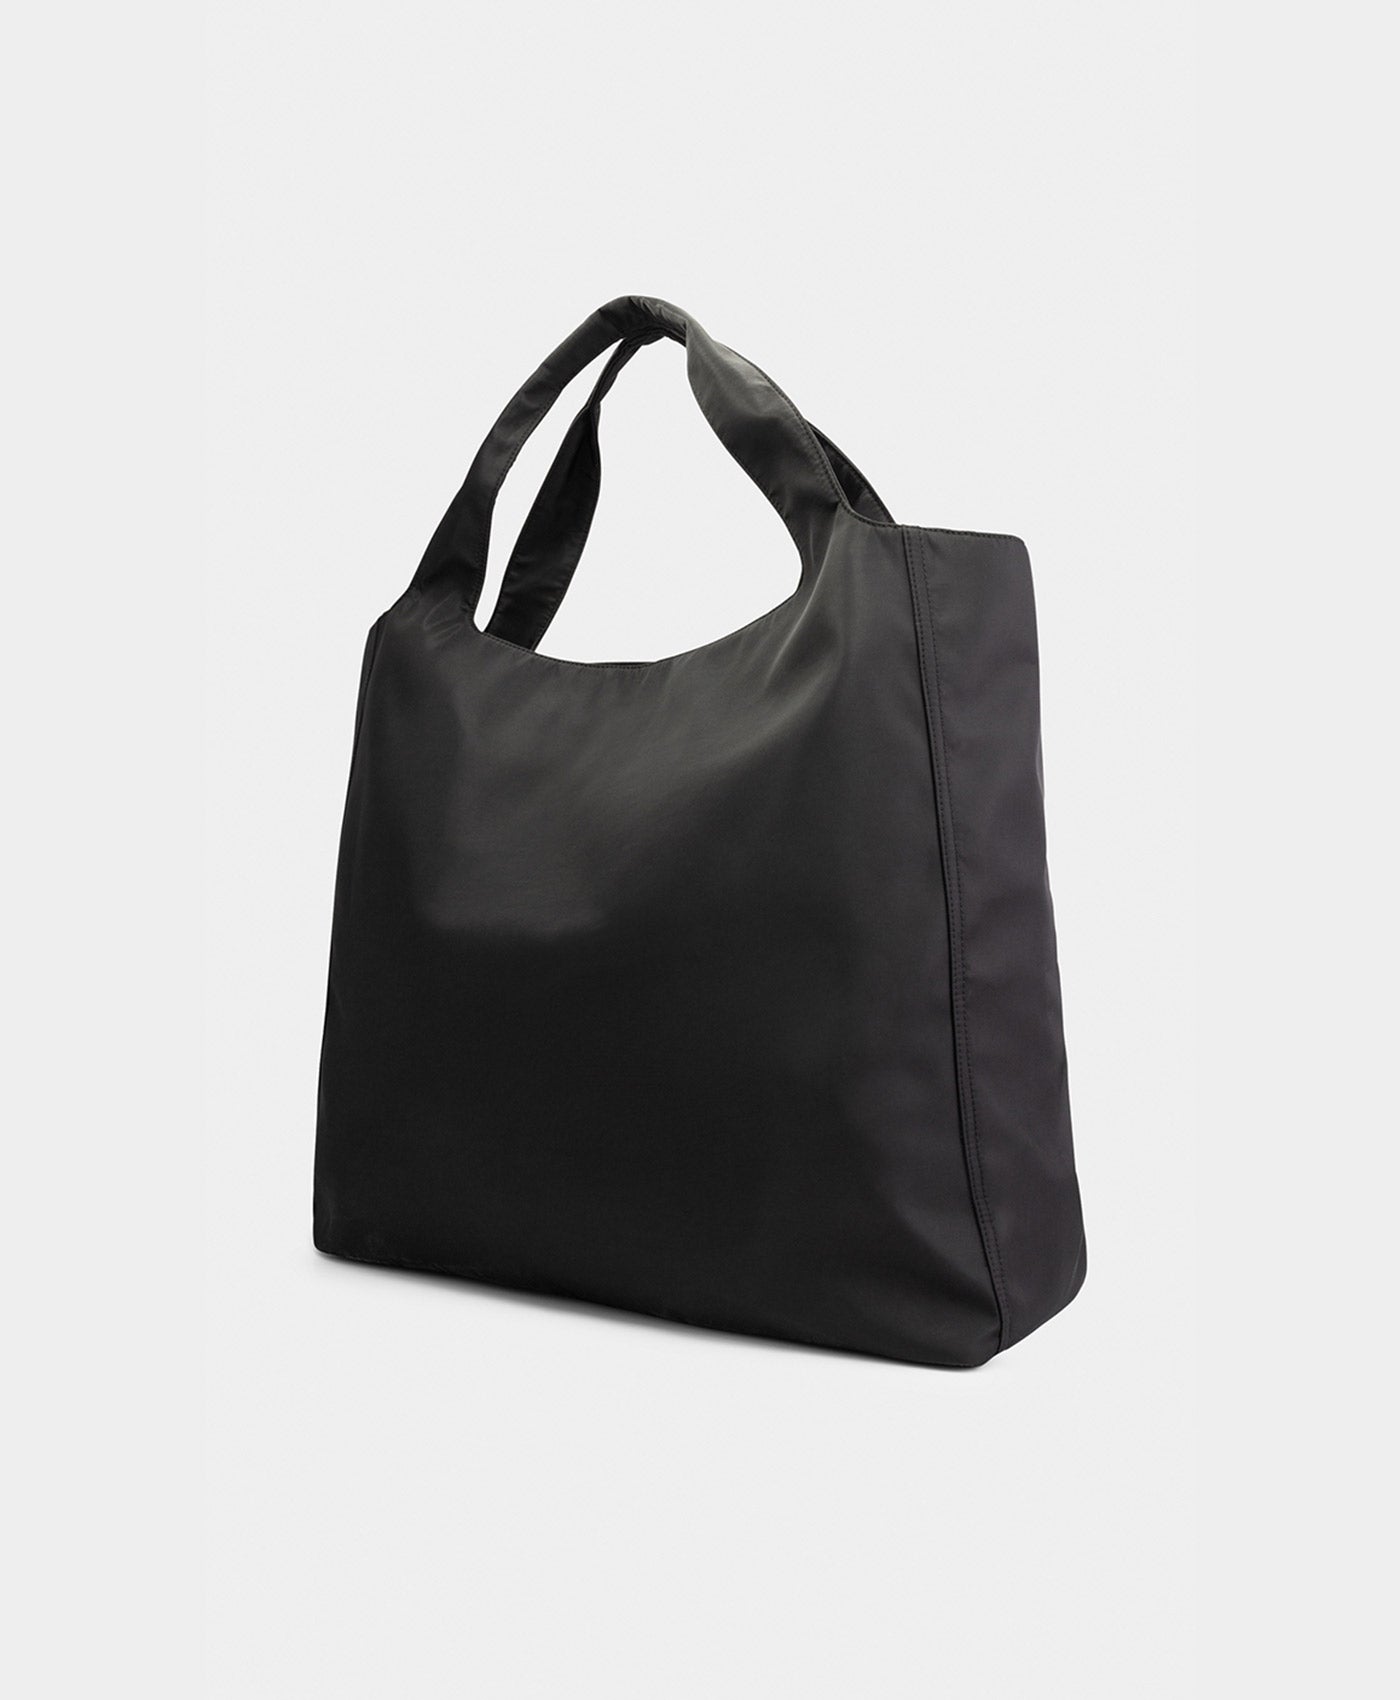 DP - Black Ekatote Bag - Packshot - Rear